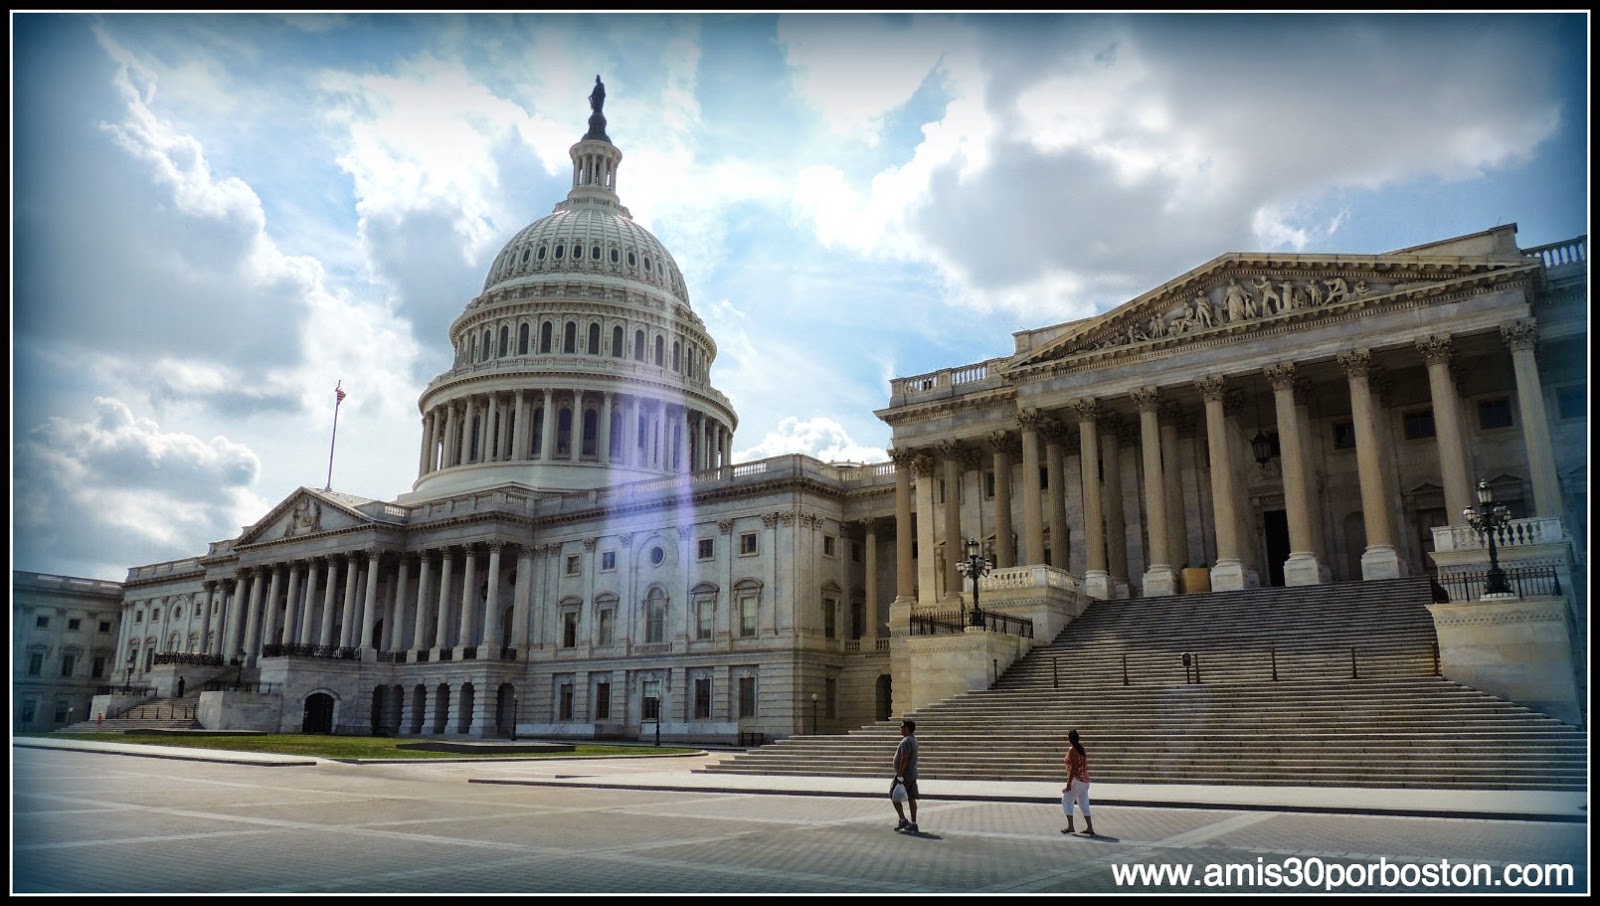 Capitolio de los Estados Unidos en el National Mall de Washington D.C. 